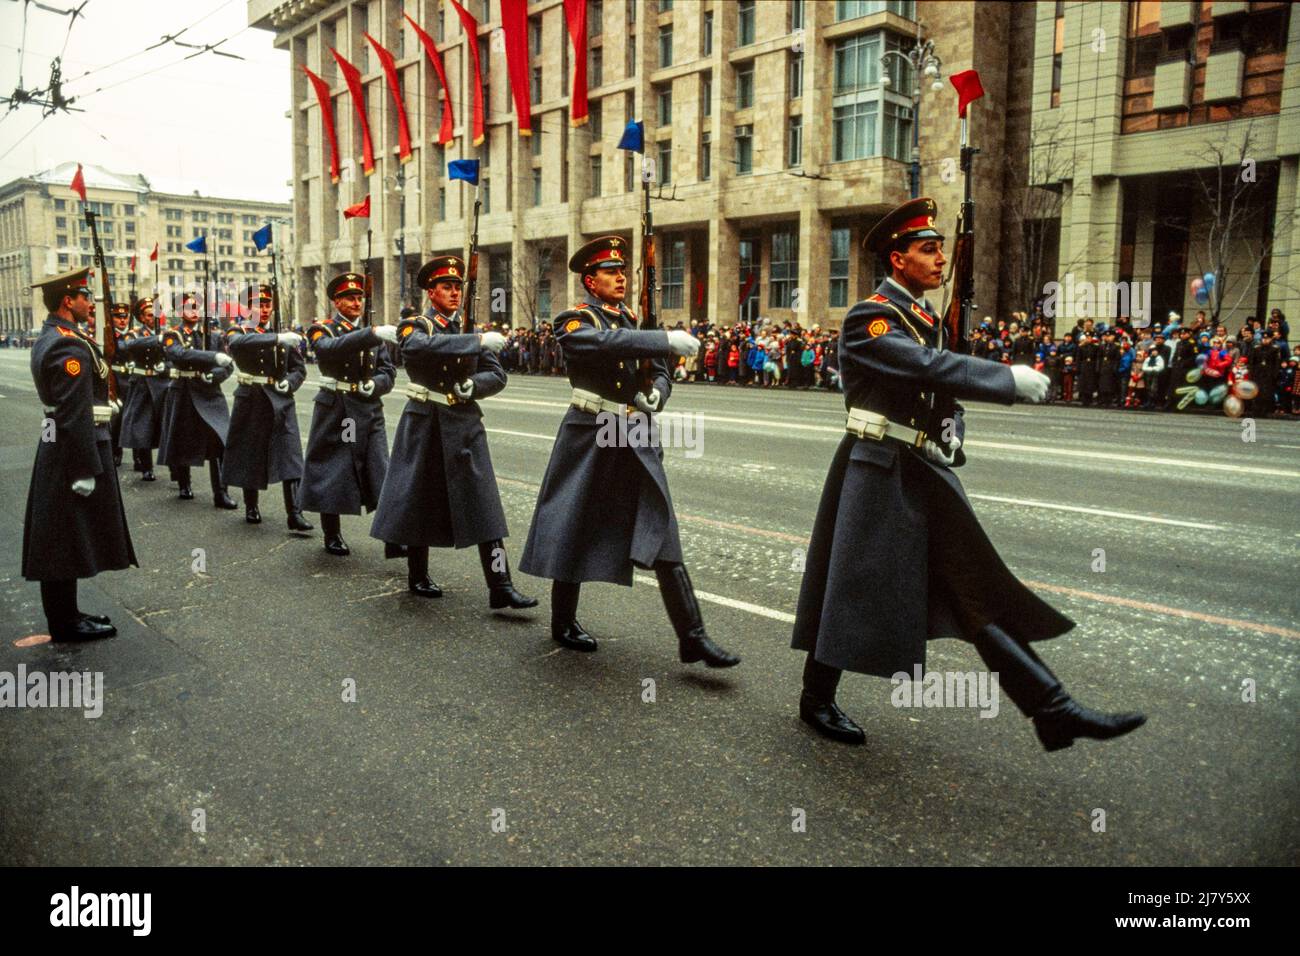 Les soldats se berce de traverser le centre de Kiev, en Ukraine, dans le cadre des célébrations de la Révolution de l'URSS, le 9th octobre 1989. Banque D'Images